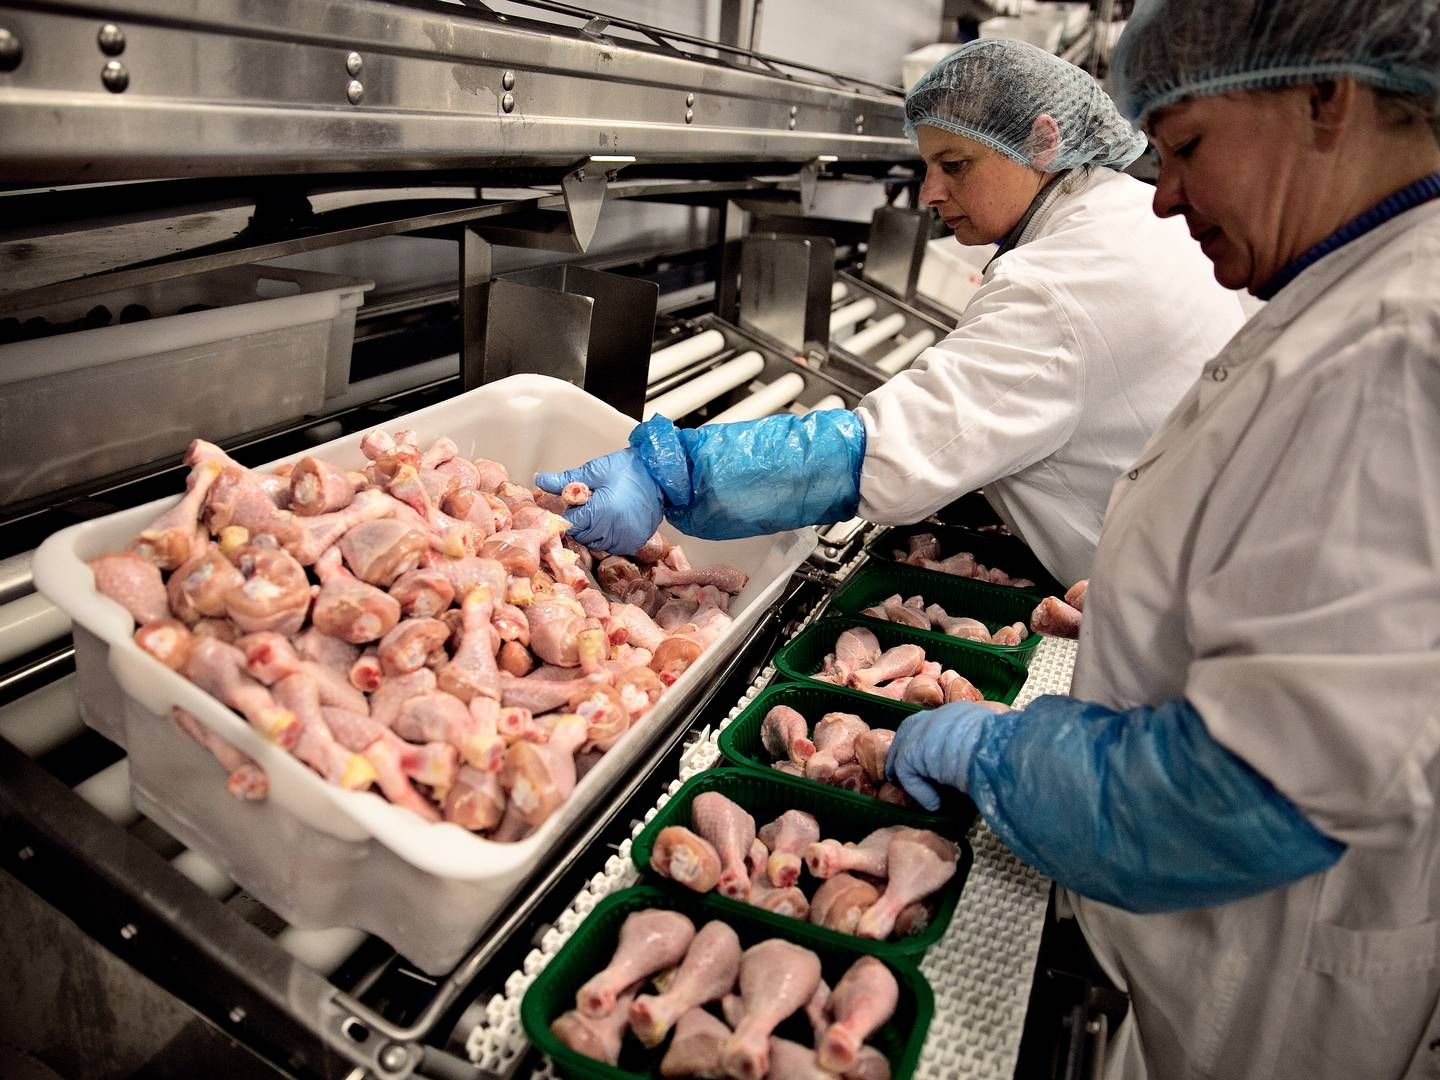 Danpo fylder en betydelig del af den danske afdeling i kyllingegiganten Scandi Standard. Den fortsat underskudsgivende danske forretning kaldes af direktøren for skuffende efter et kvartal med tilbagegang. | Foto: Joachim Adrian